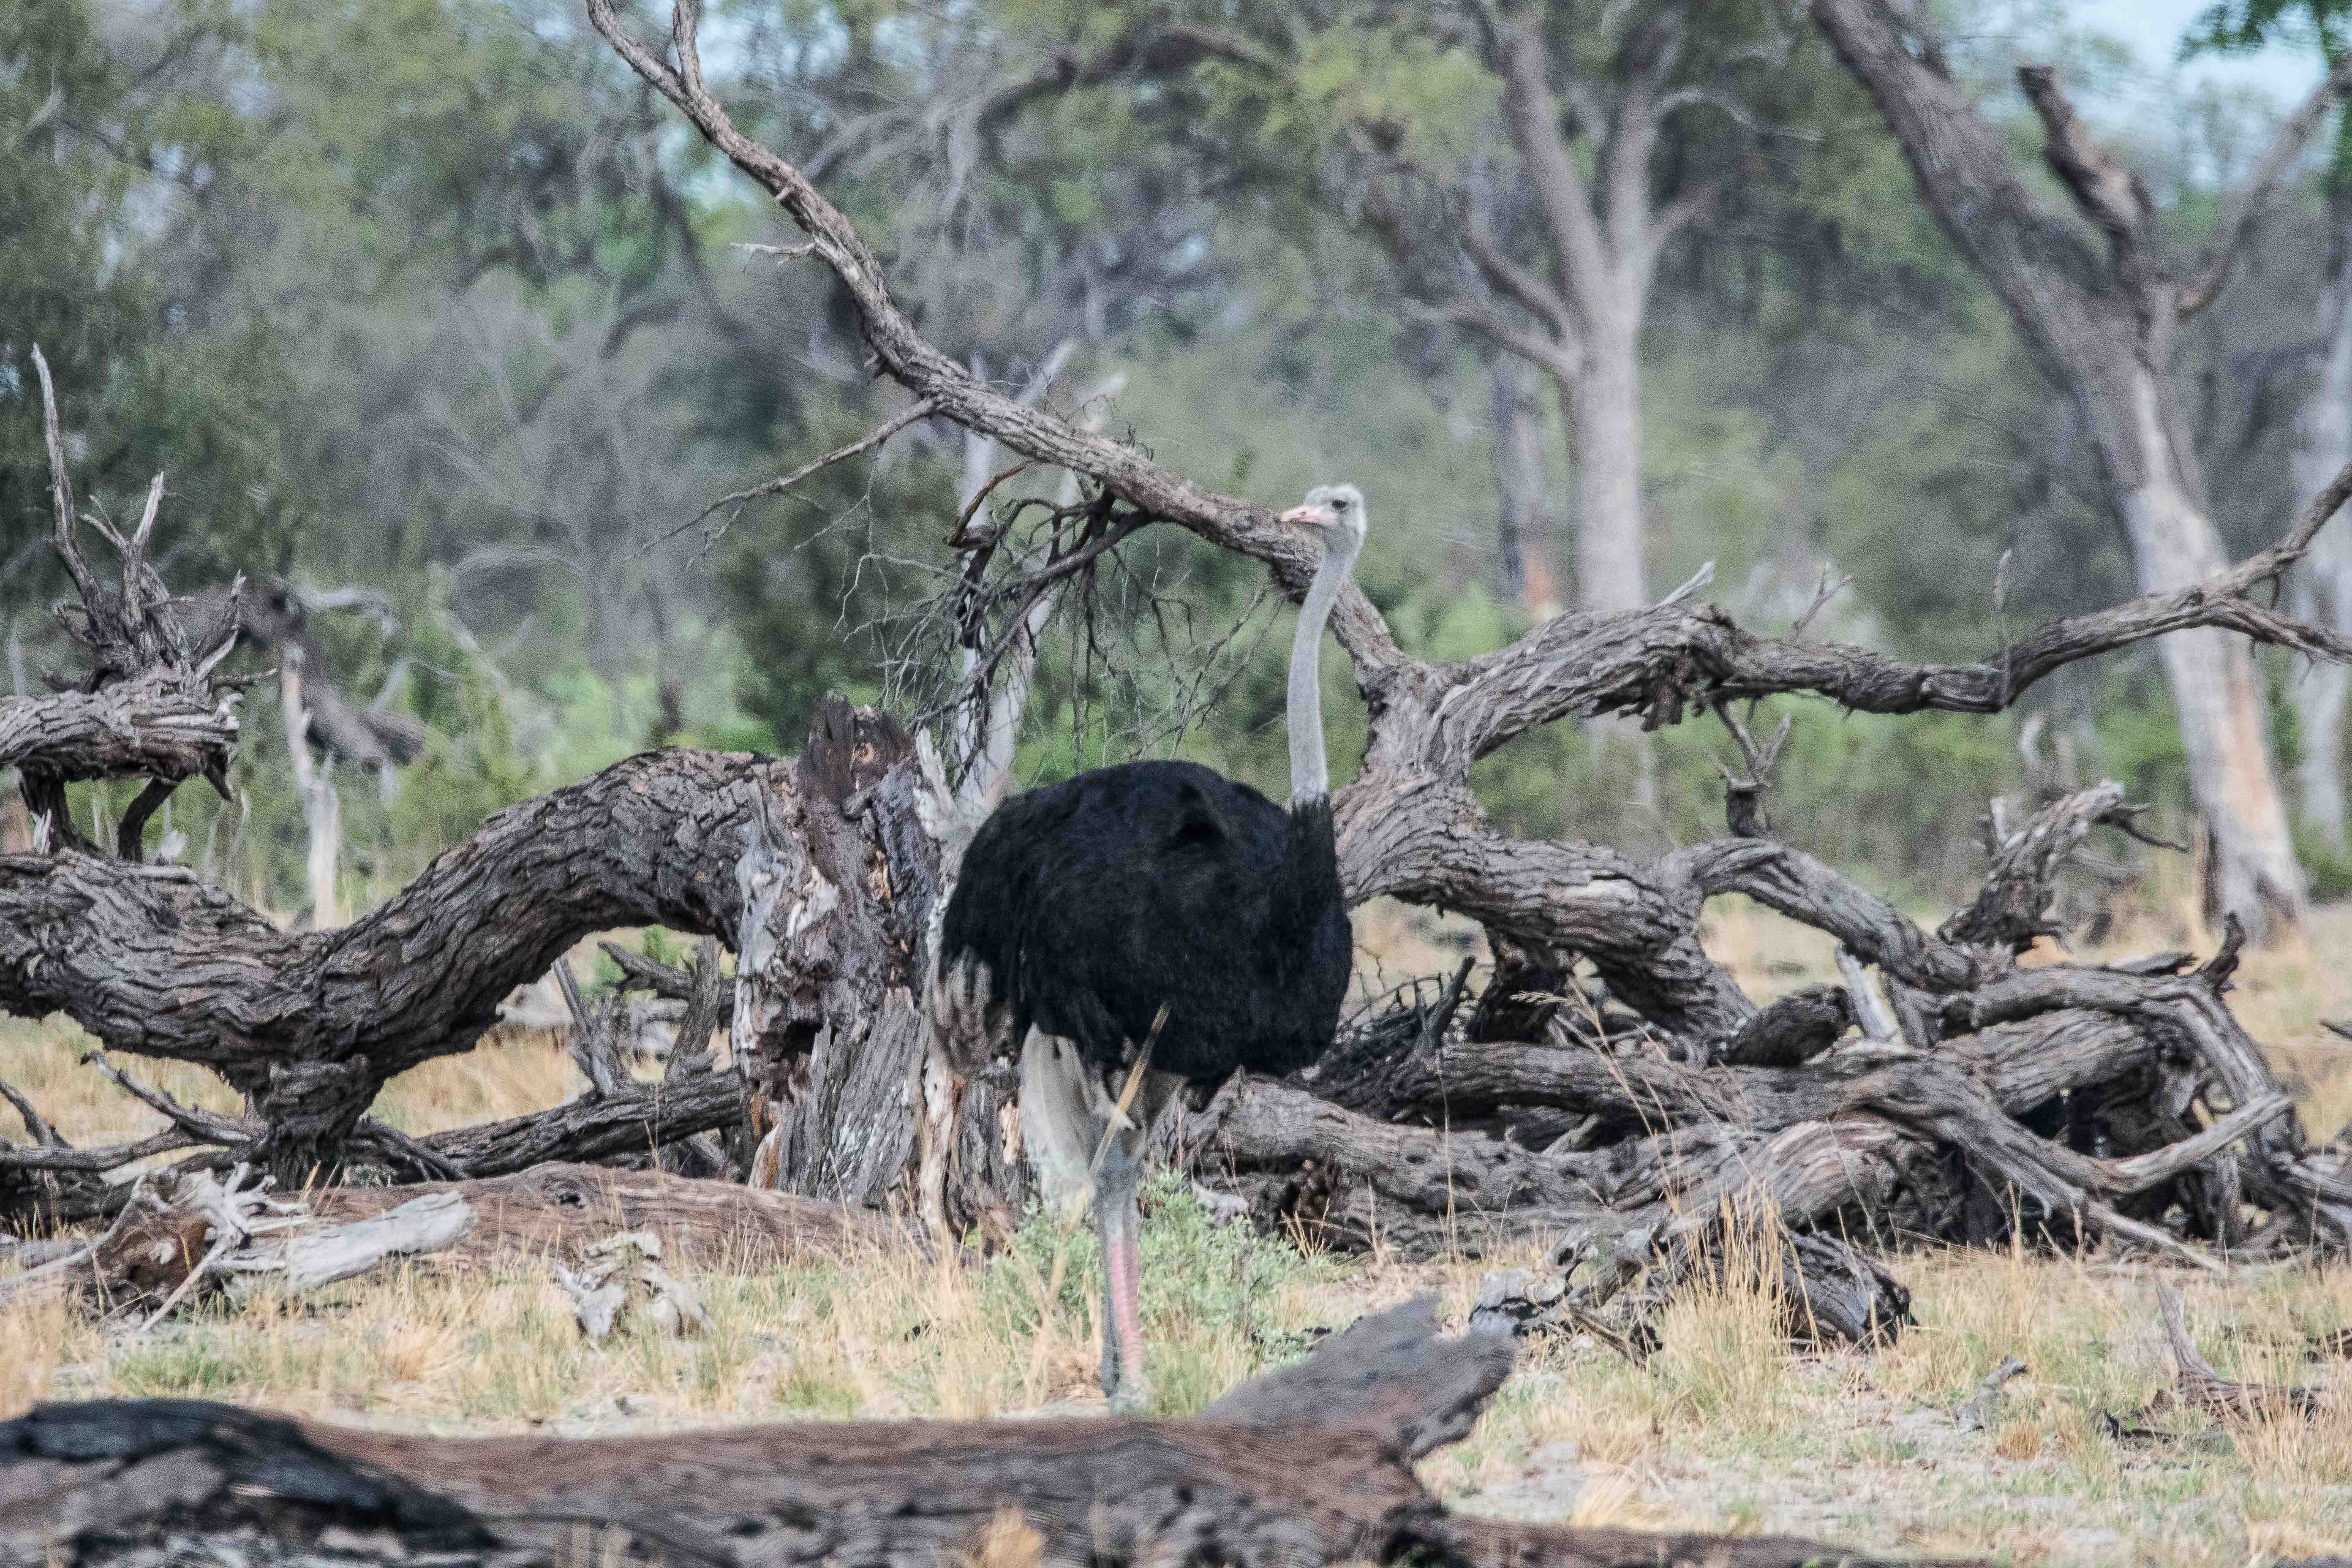 Autruche d'Afrique (Common Ostrich, Struthio camelus ssp australis), mâle adulte internuptial dans un milieu boisé ouvert, Kwando, Delta de l'Okavango, Botswana.